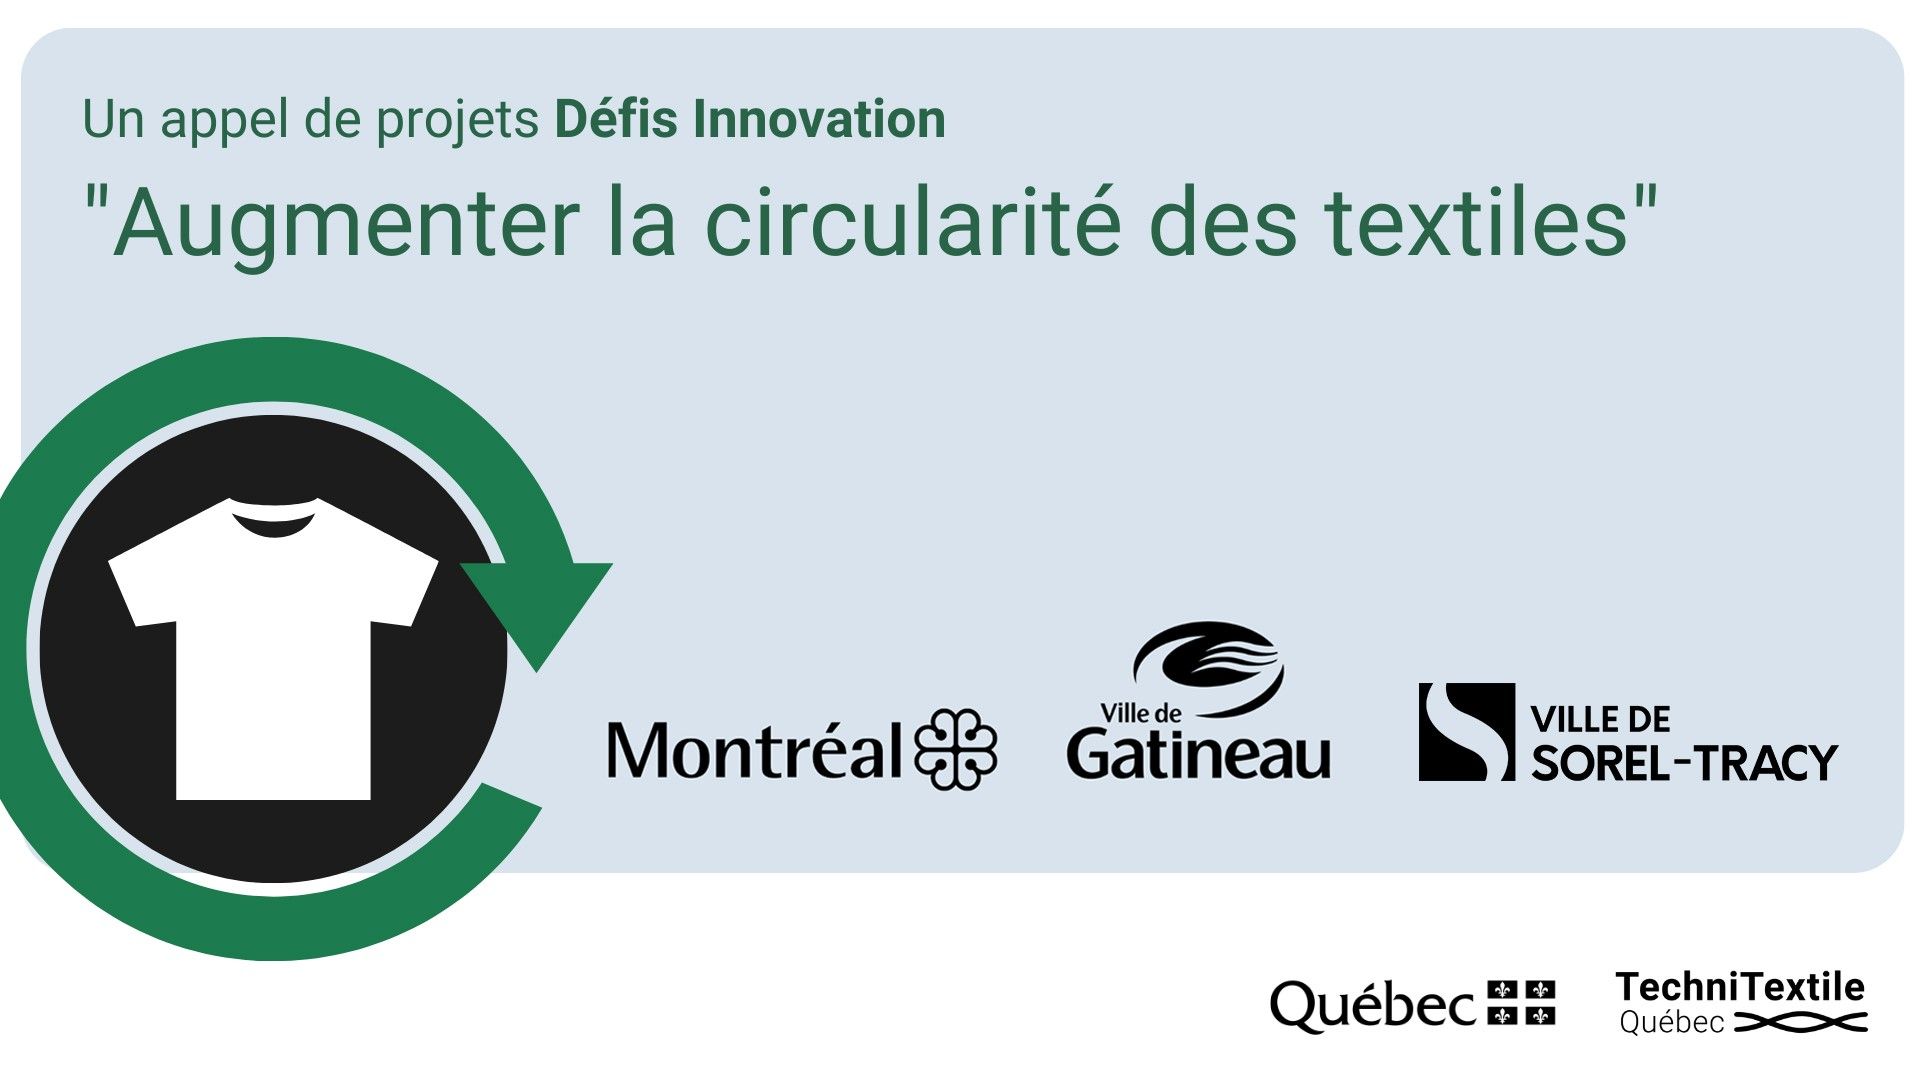 FERMÉ - Les villes de Montréal, Gatineau et Sorel-Tracy lancent un Défi Innovation pour augmenter la circularité des textiles